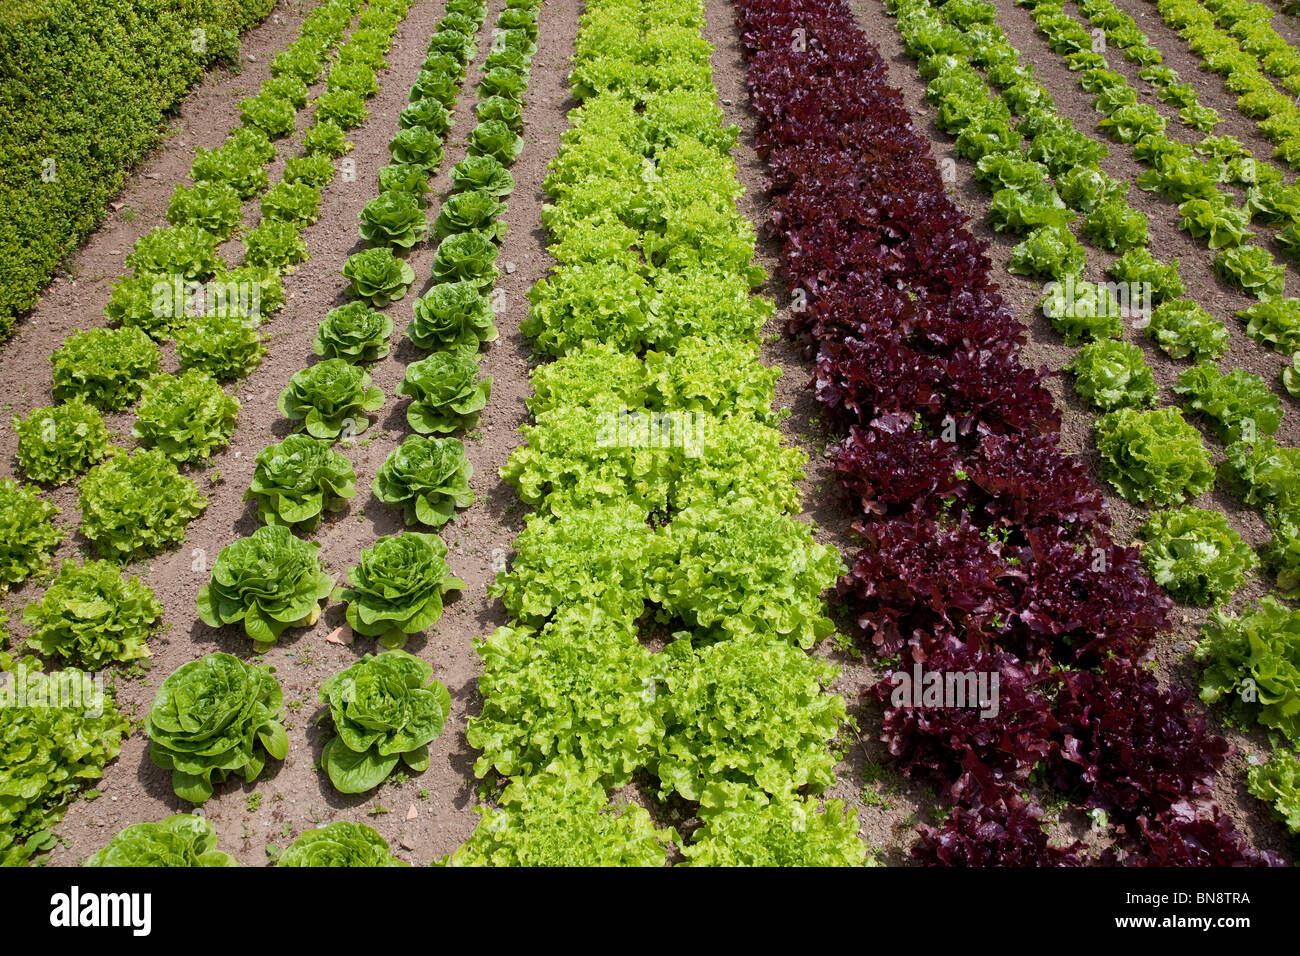 Makellose Salate wachsen in einem gut gepflegten Gemüsegarten Stockfoto